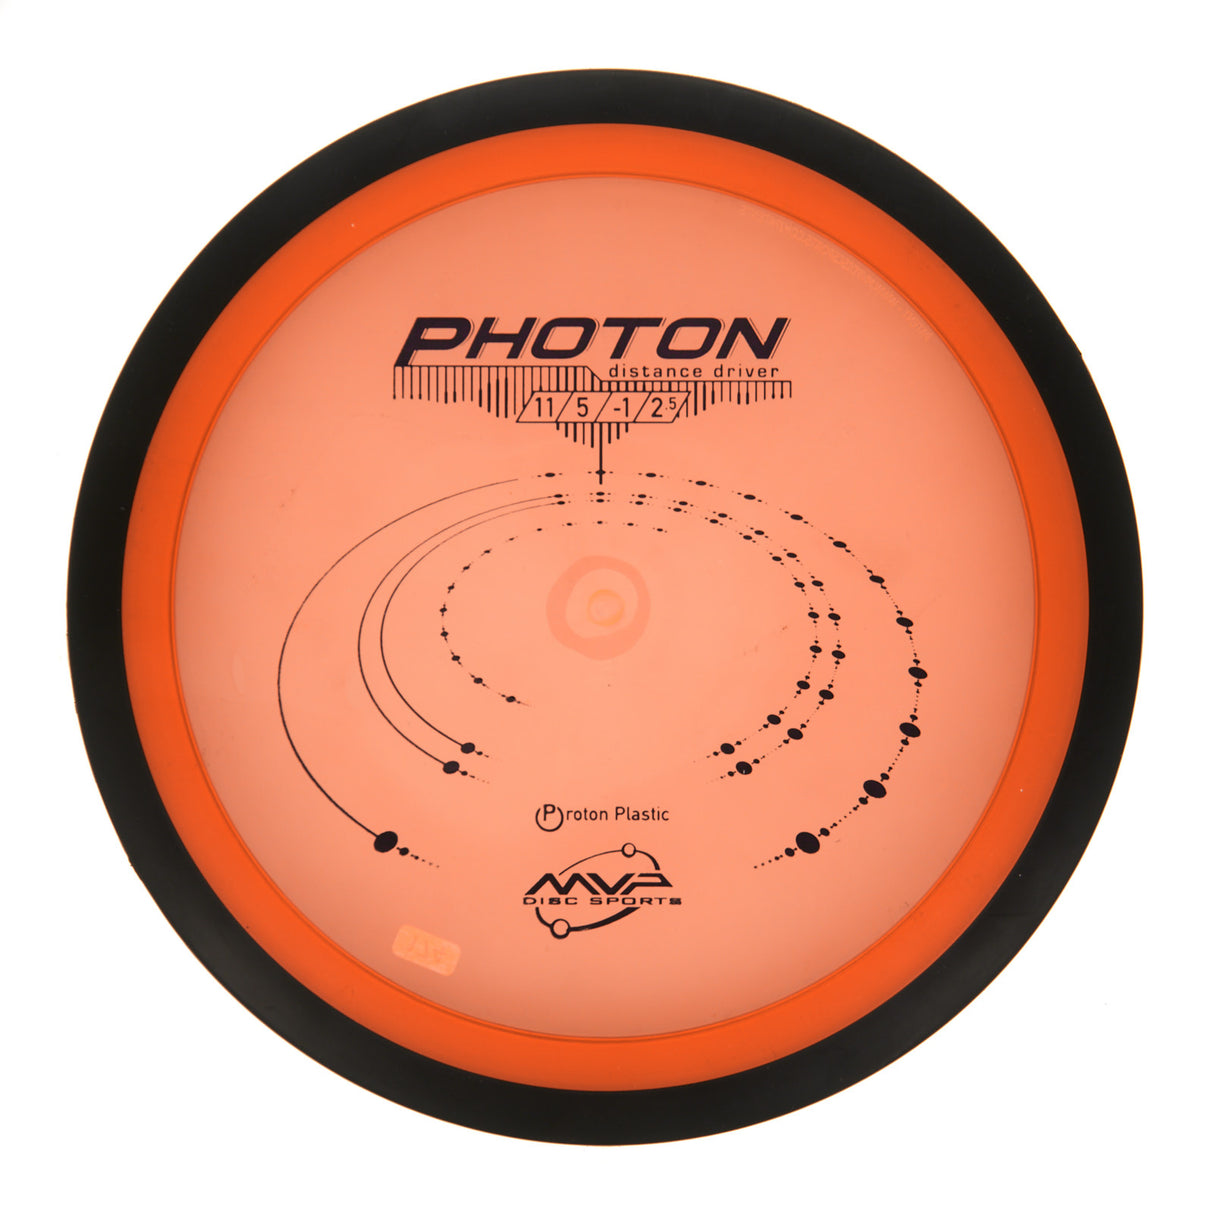 MVP Photon - Proton 176g | Style 0002